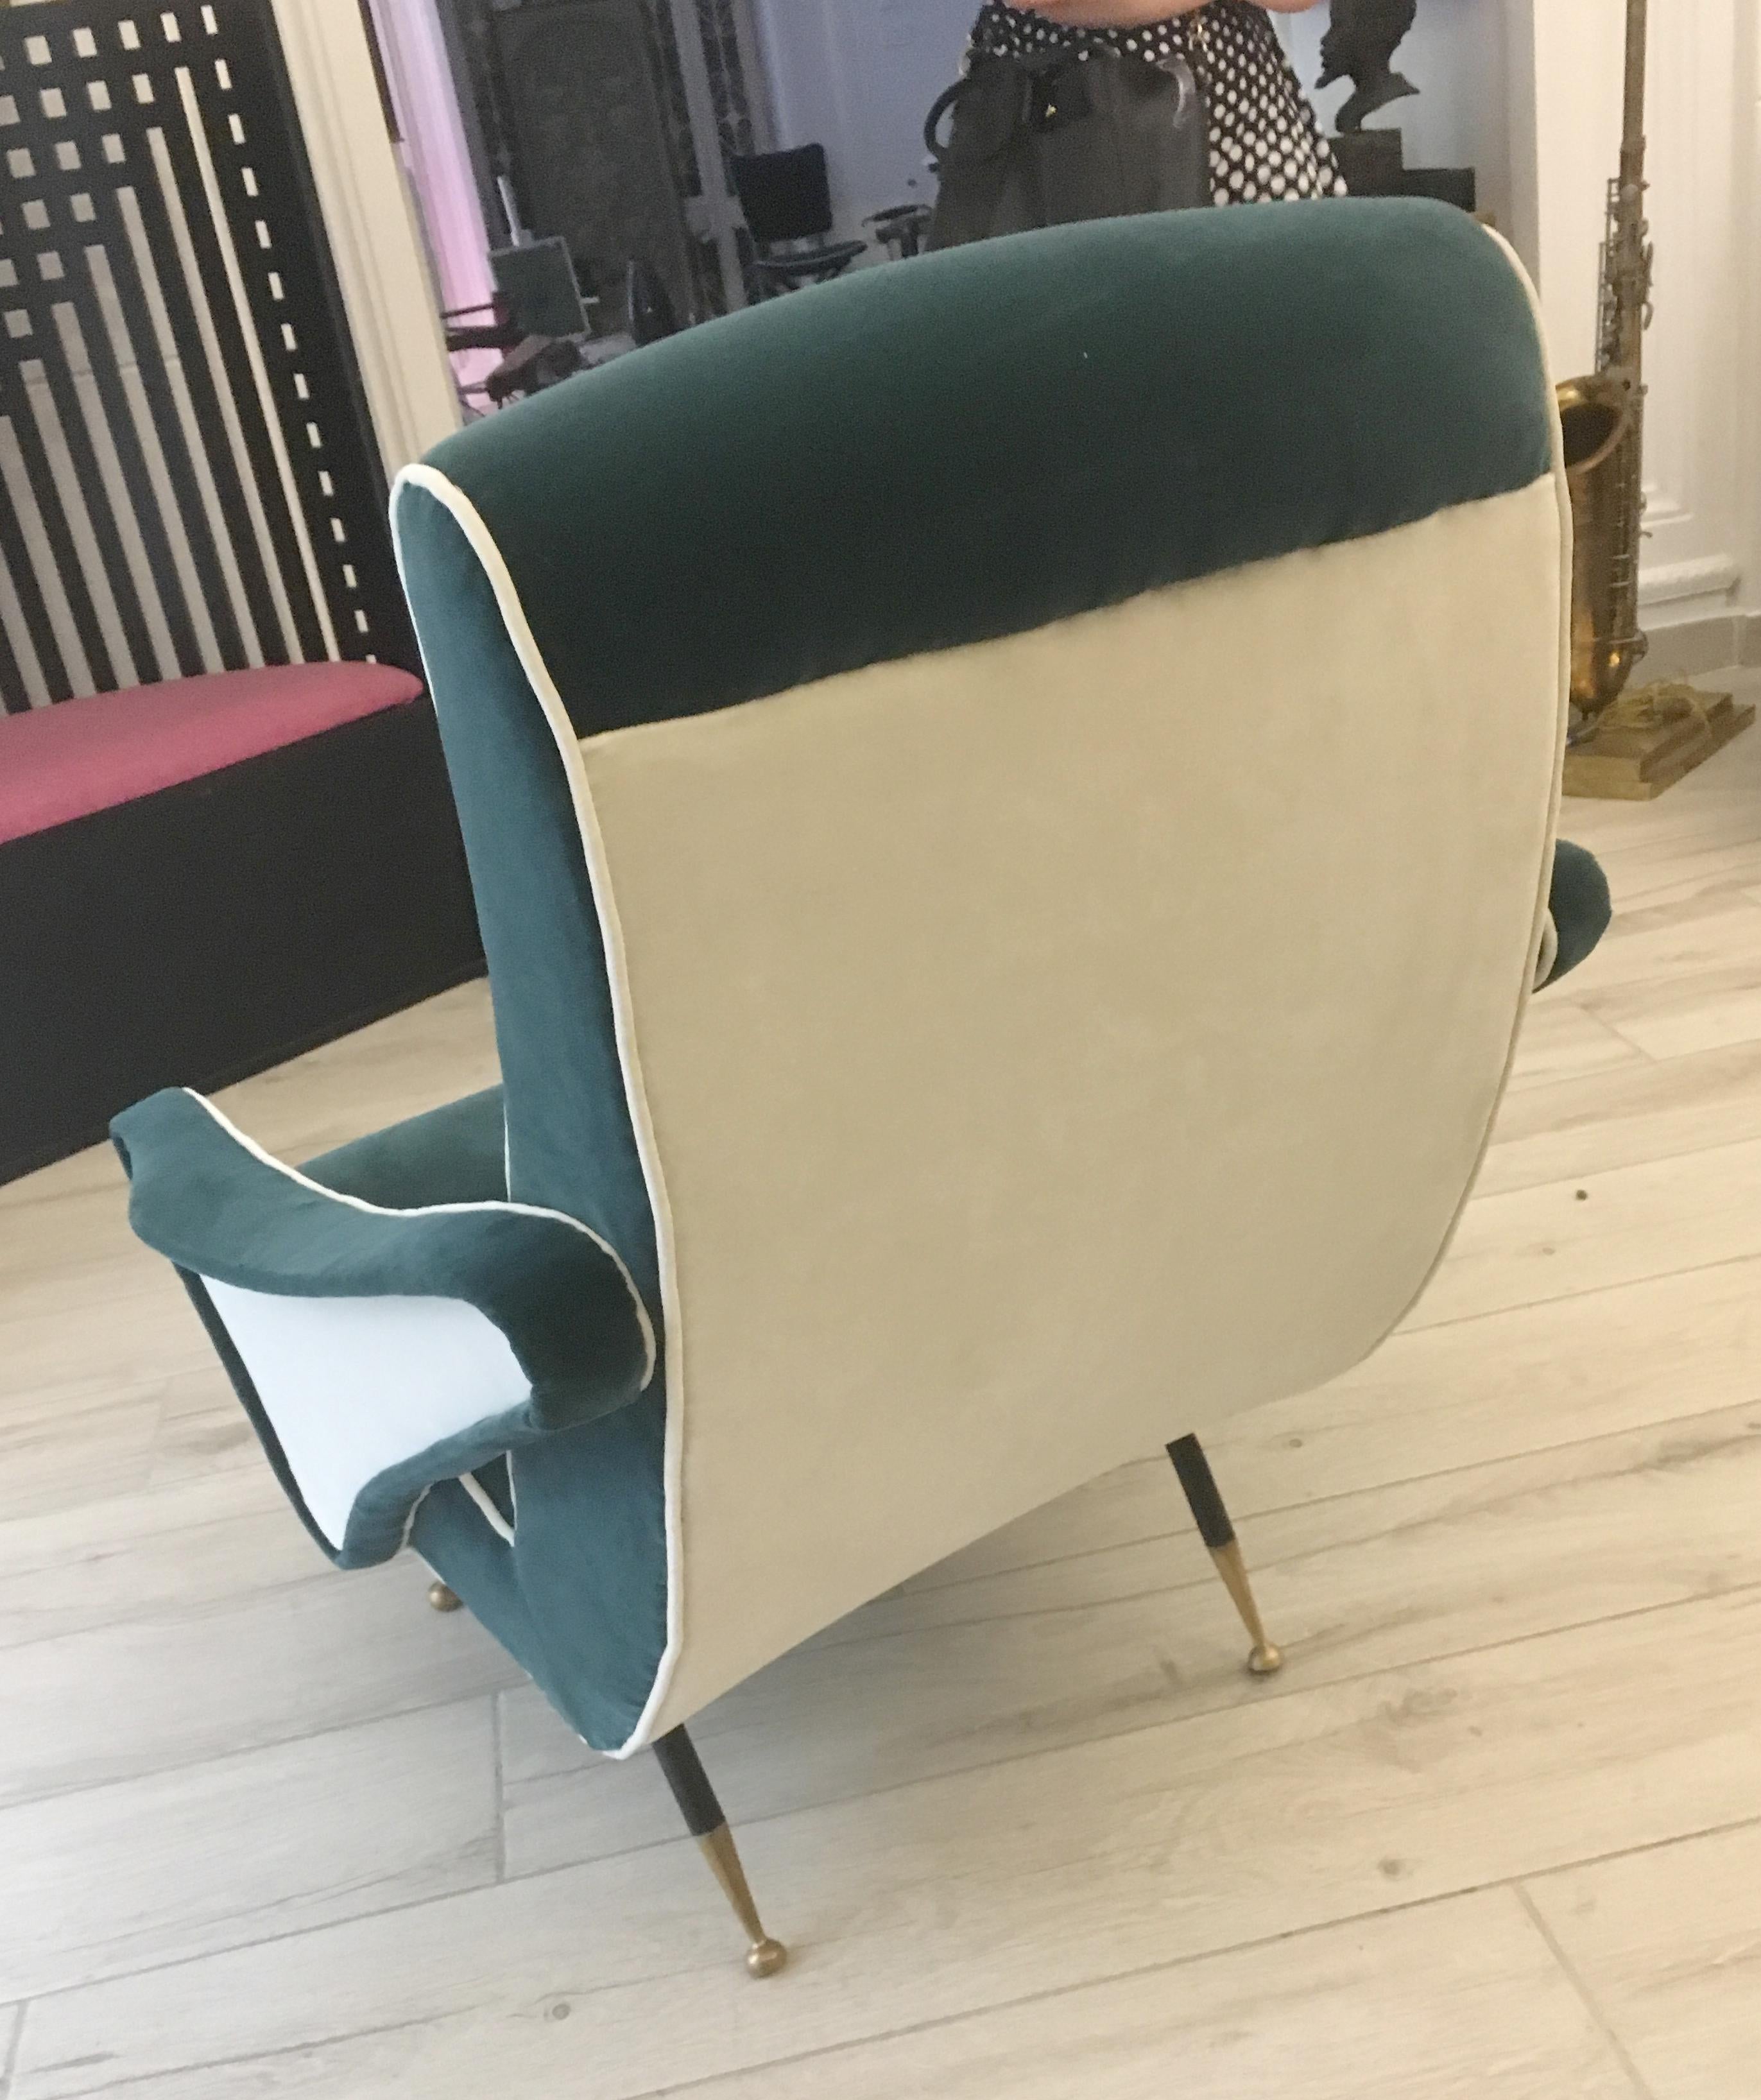 1950s style armchair